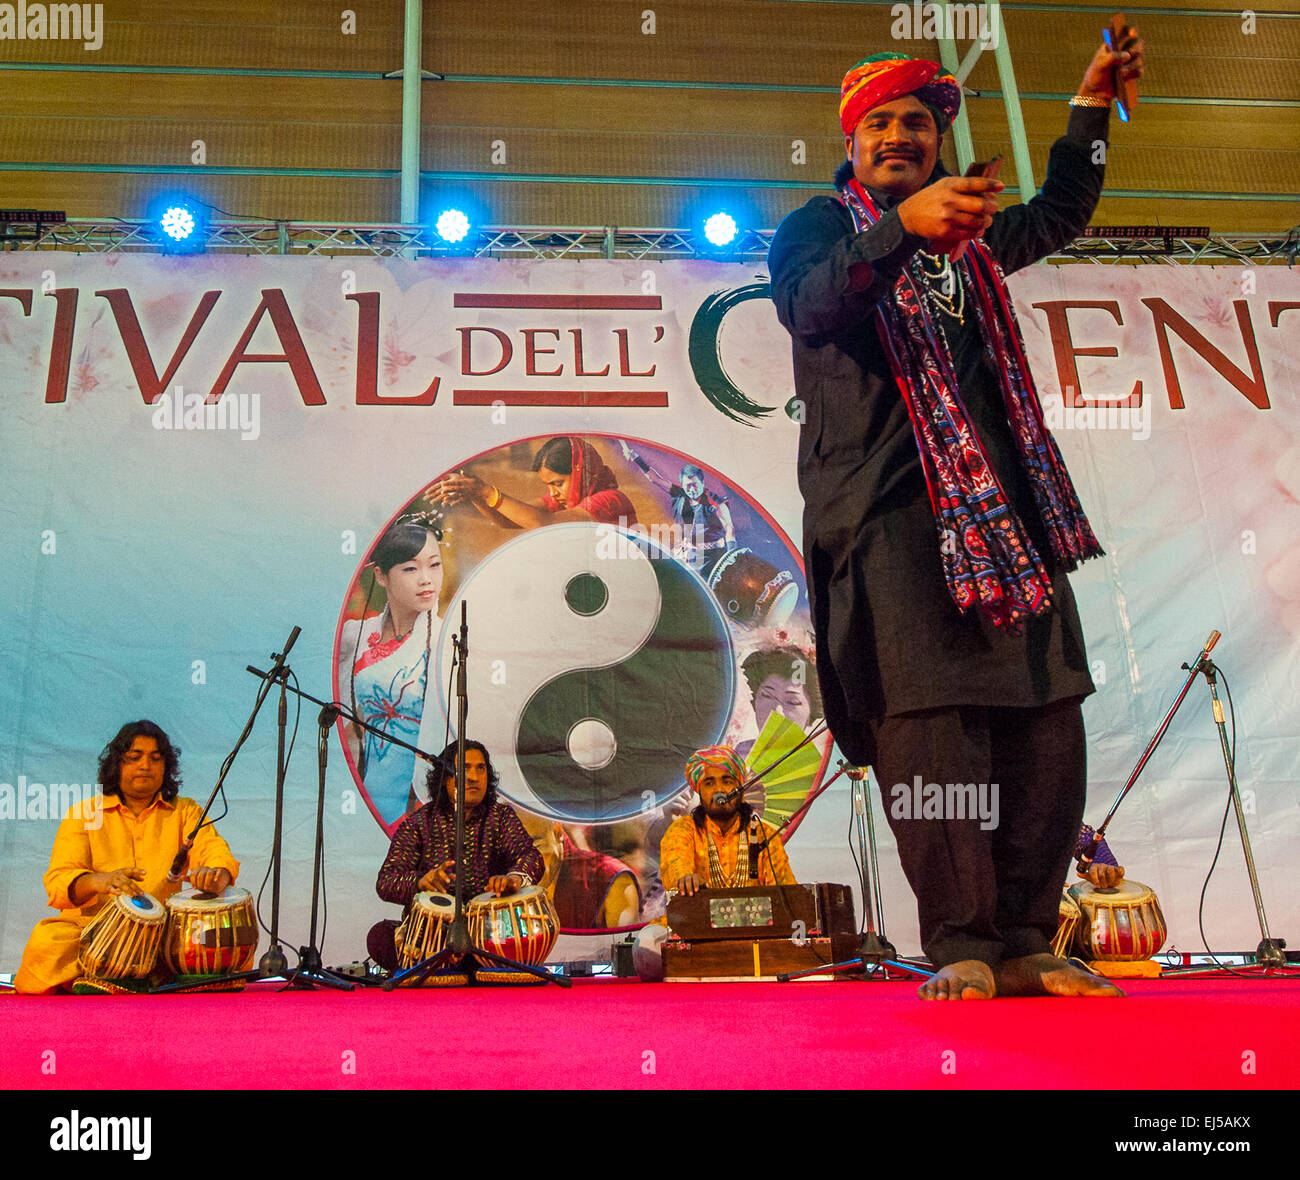 Turín, Italia. 20 de marzo de 2015. Feria de Lingotto 'Festival dell'Oriente' desde el 20 hasta el 22 de marzo de 2015 y del 27 al 30 de marzo de 2015 - 20 de marzo de 2015 -la India Rajasthan Dhoad gitanos de Rajastán y danza Gumar Crédito: Realmente fácil Star/Alamy Live News Foto de stock